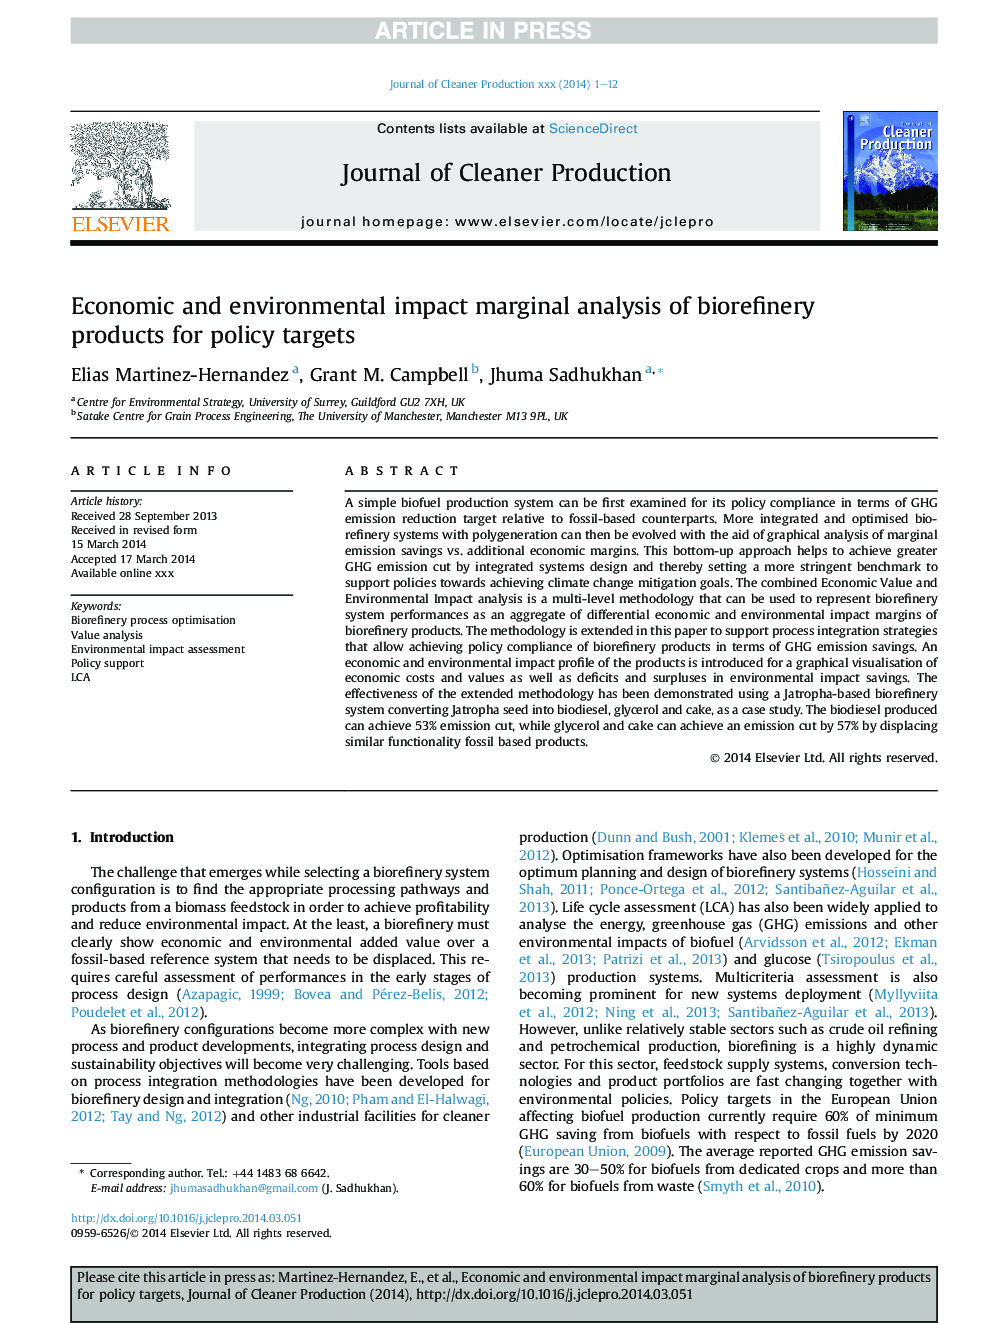 تجزیه و تحلیل حاشیه ای اقتصادی و محیط زیستی محصولات بیرونآمیز صنعت برای اهداف سیاست 